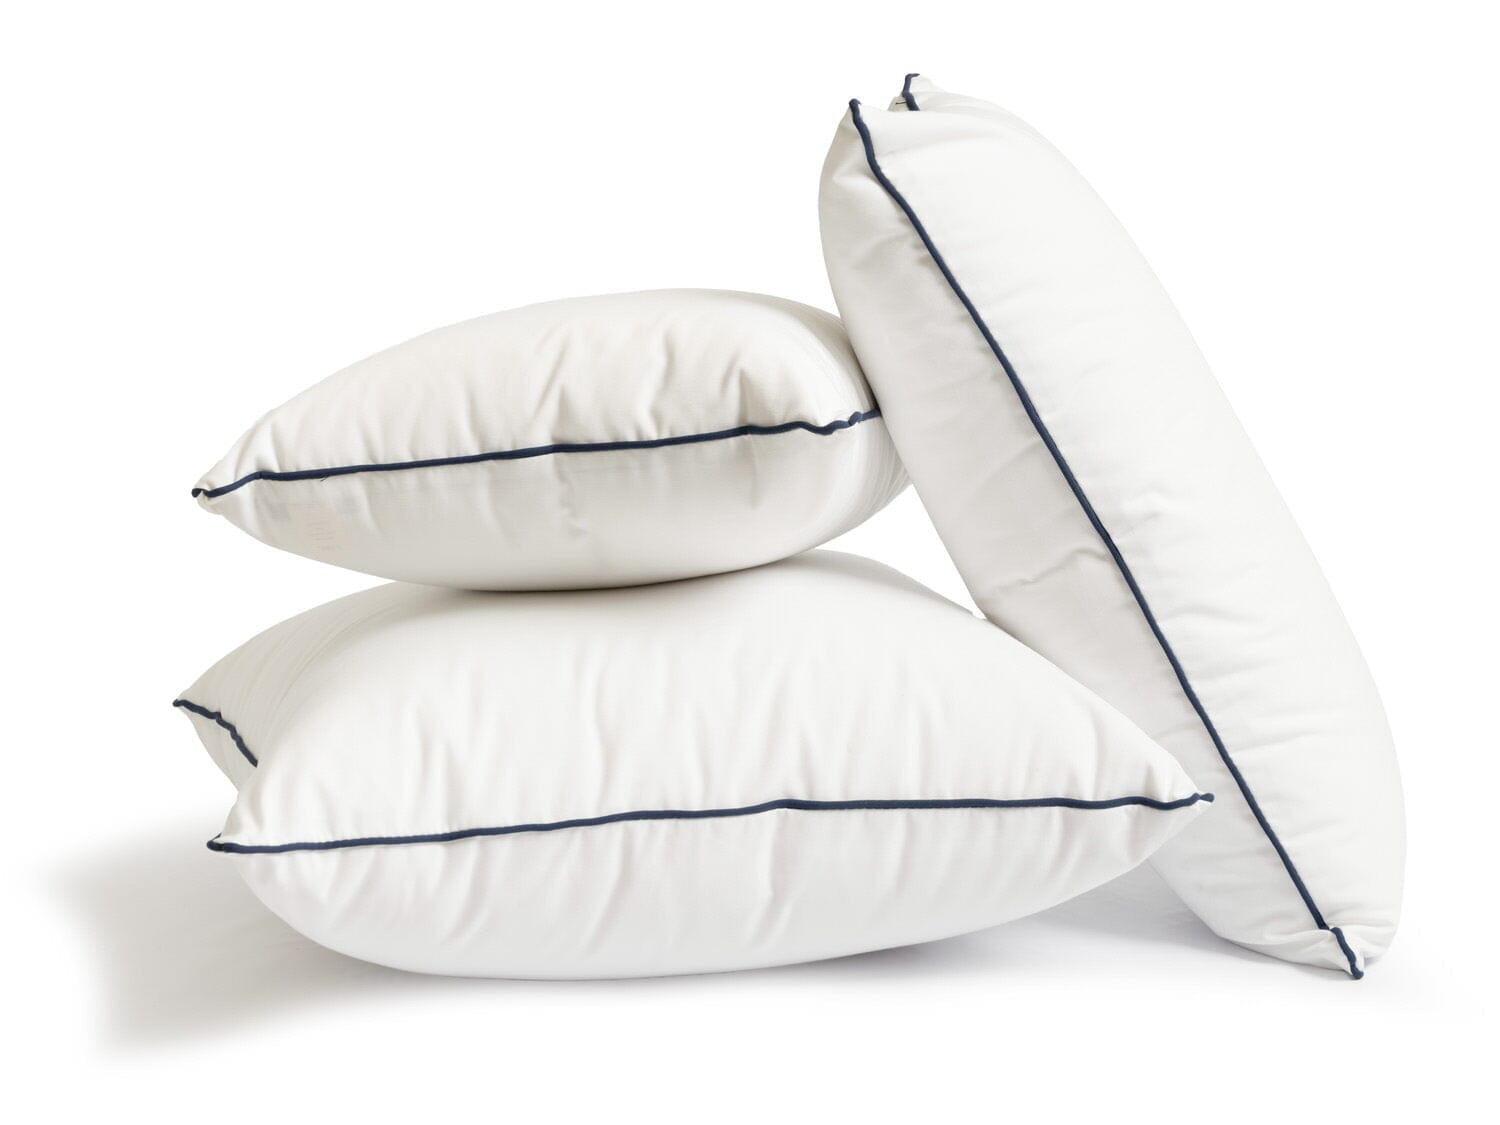 studio image of small white throw pillow